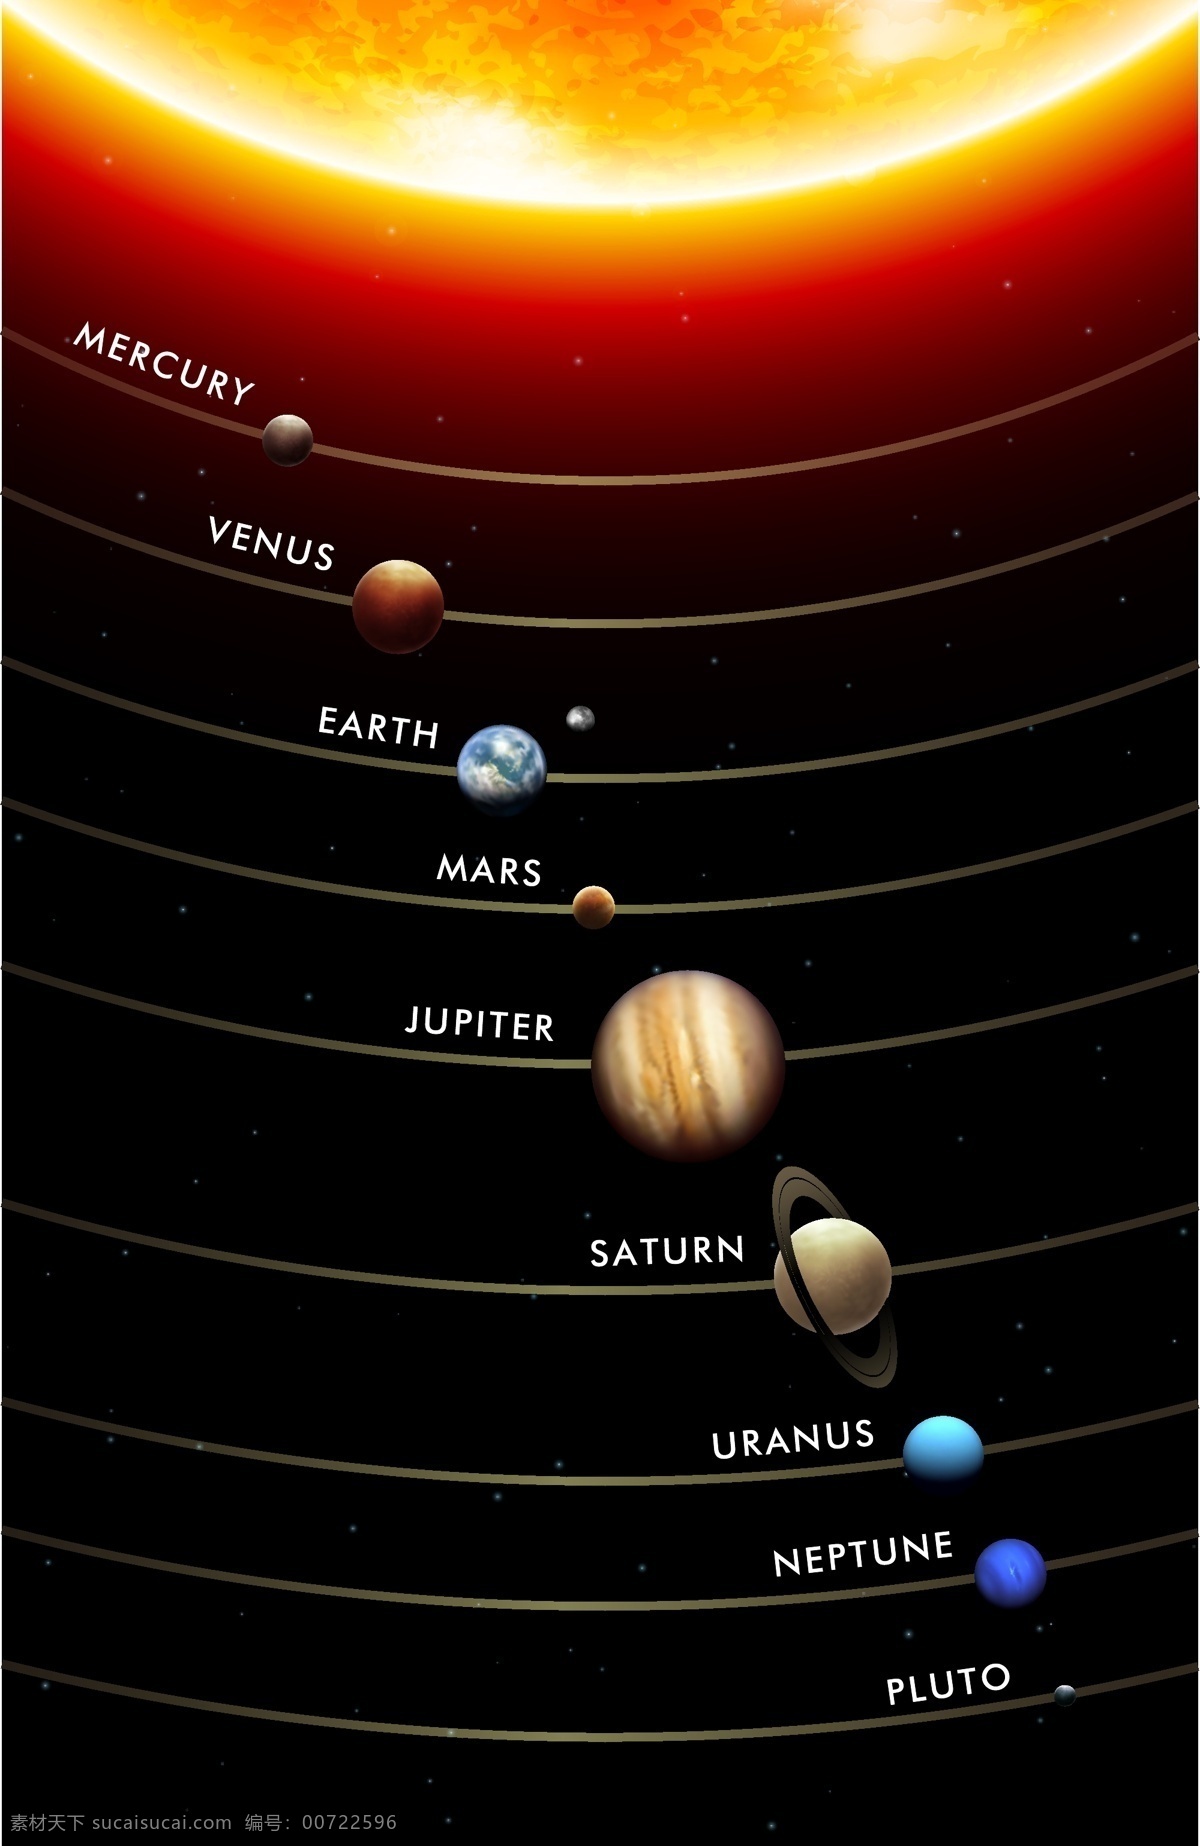 太阳系 矢量 地球 火星 金星 水星 木星 海王星 九大行星 冥王星 土星 天王星 矢量图 其他矢量图